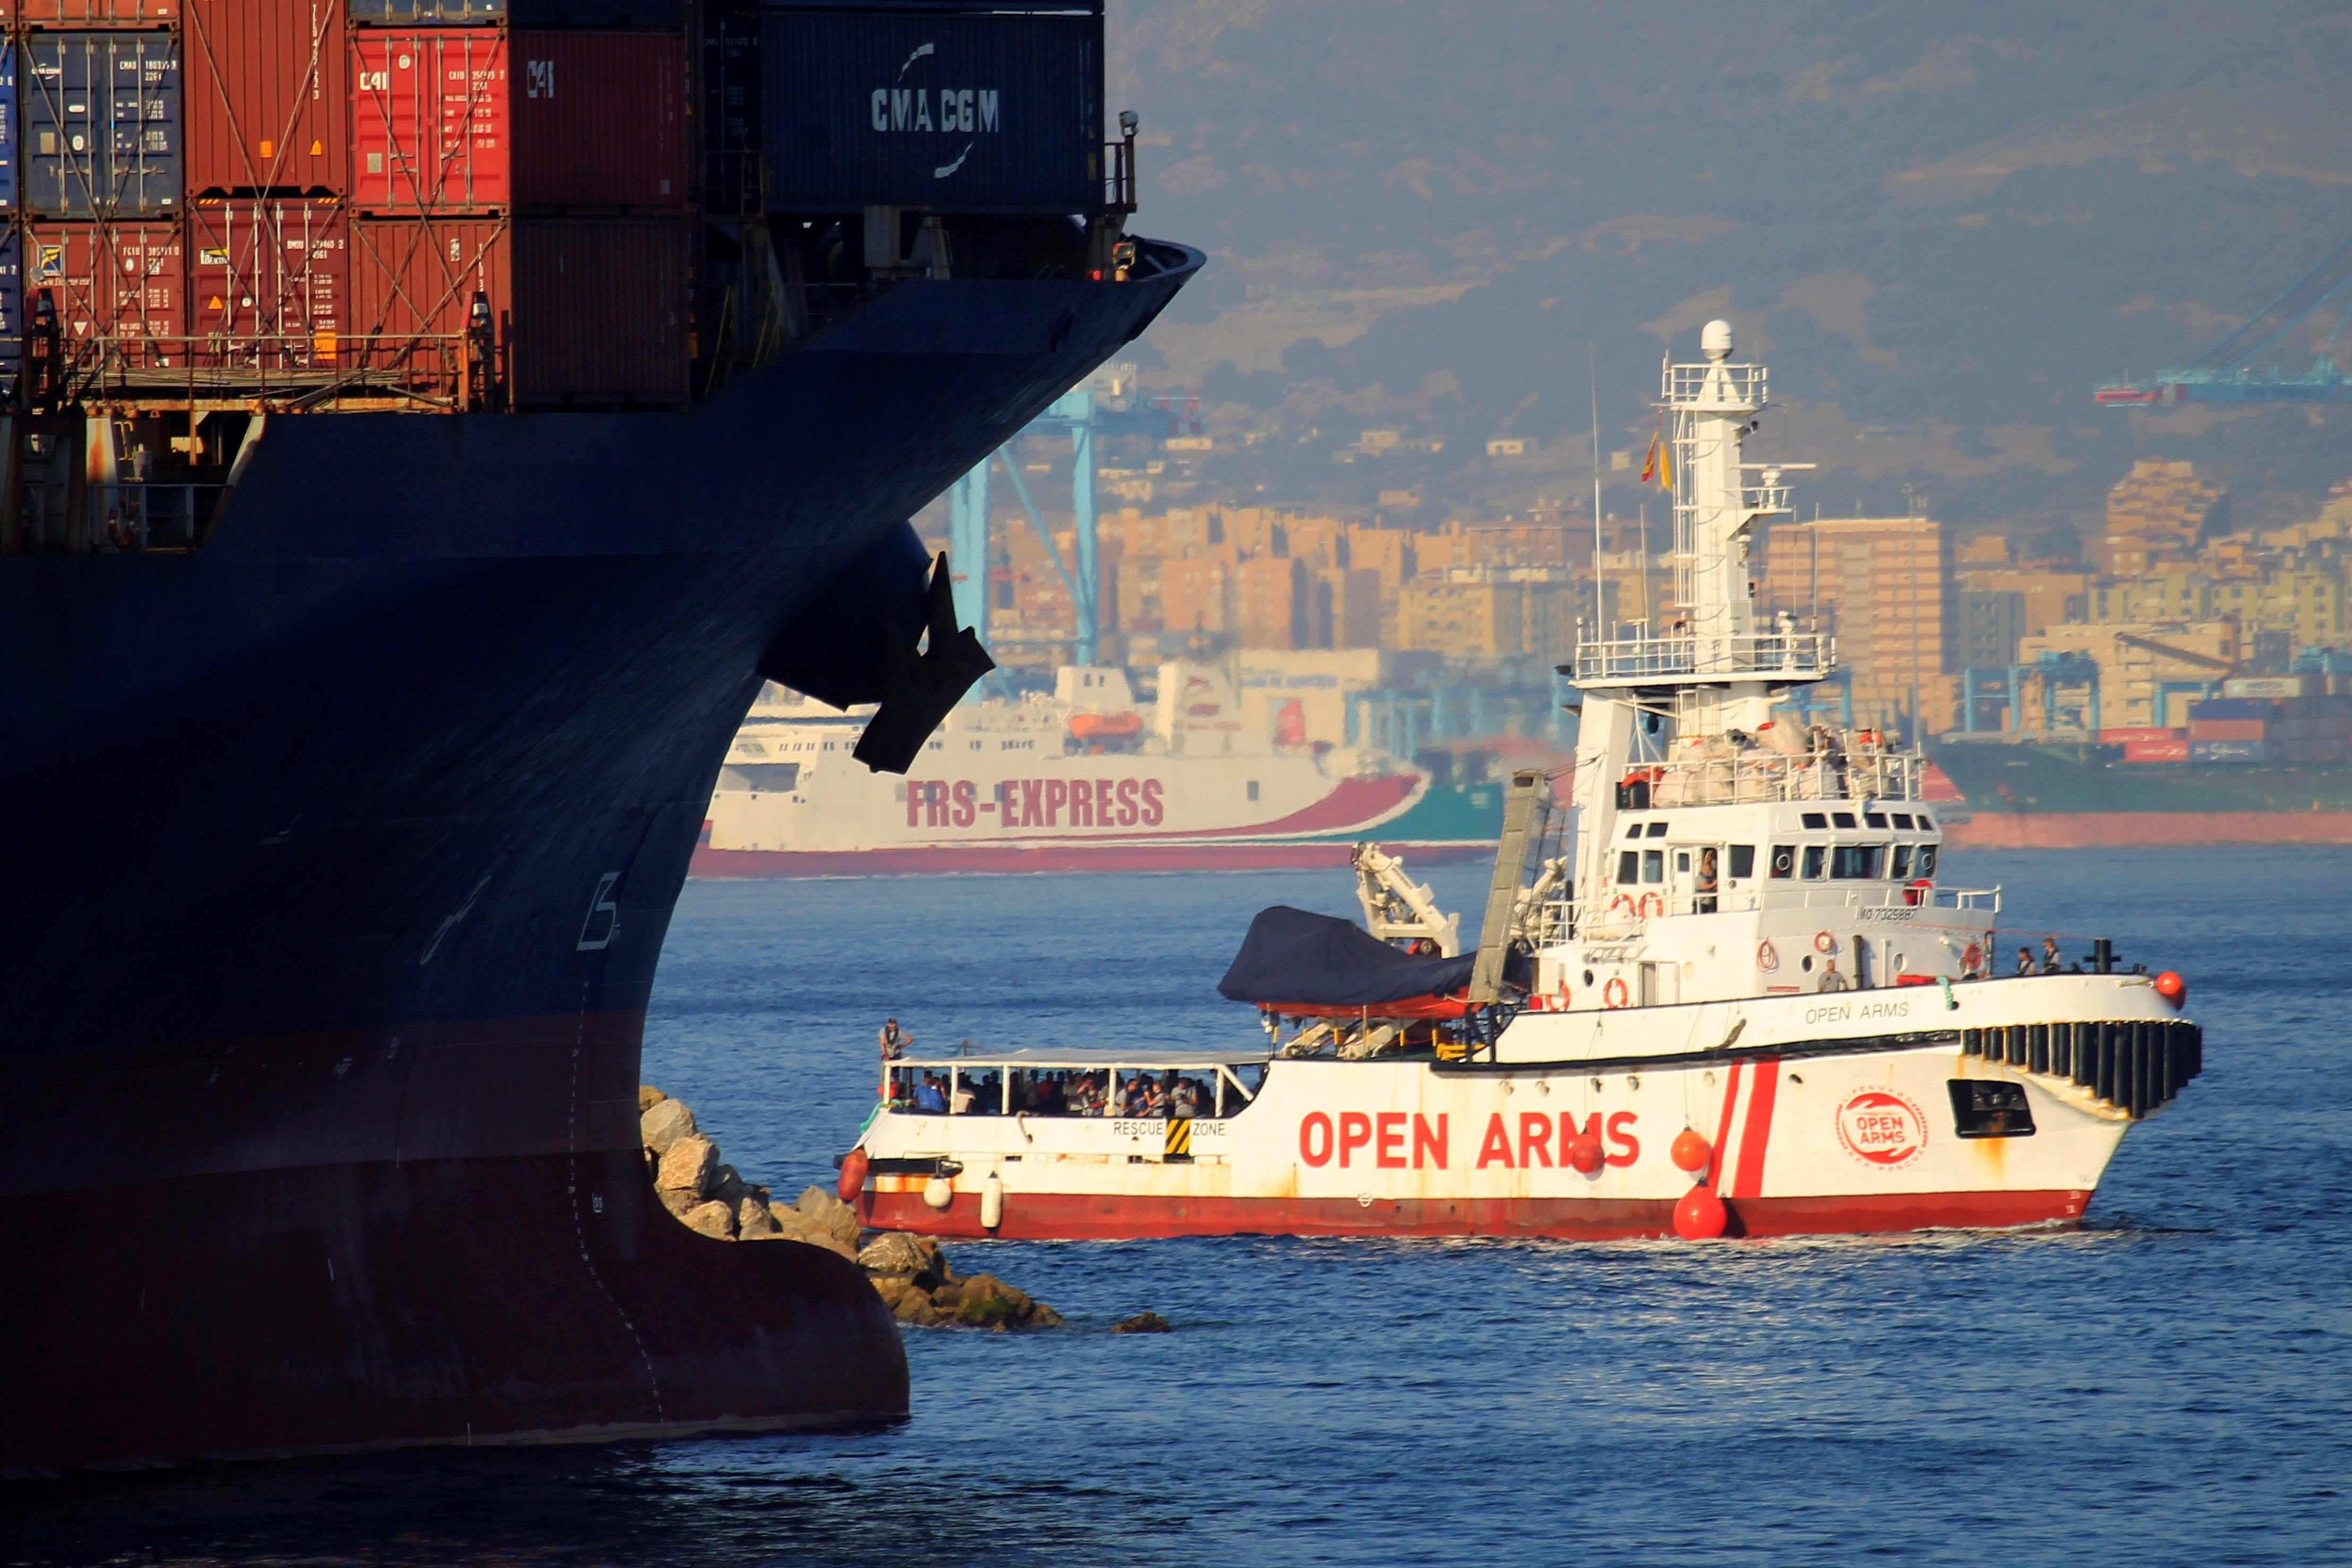 VÍDEO | L'Open Arms segueix esperant desembarcar amb 121 persones a bord